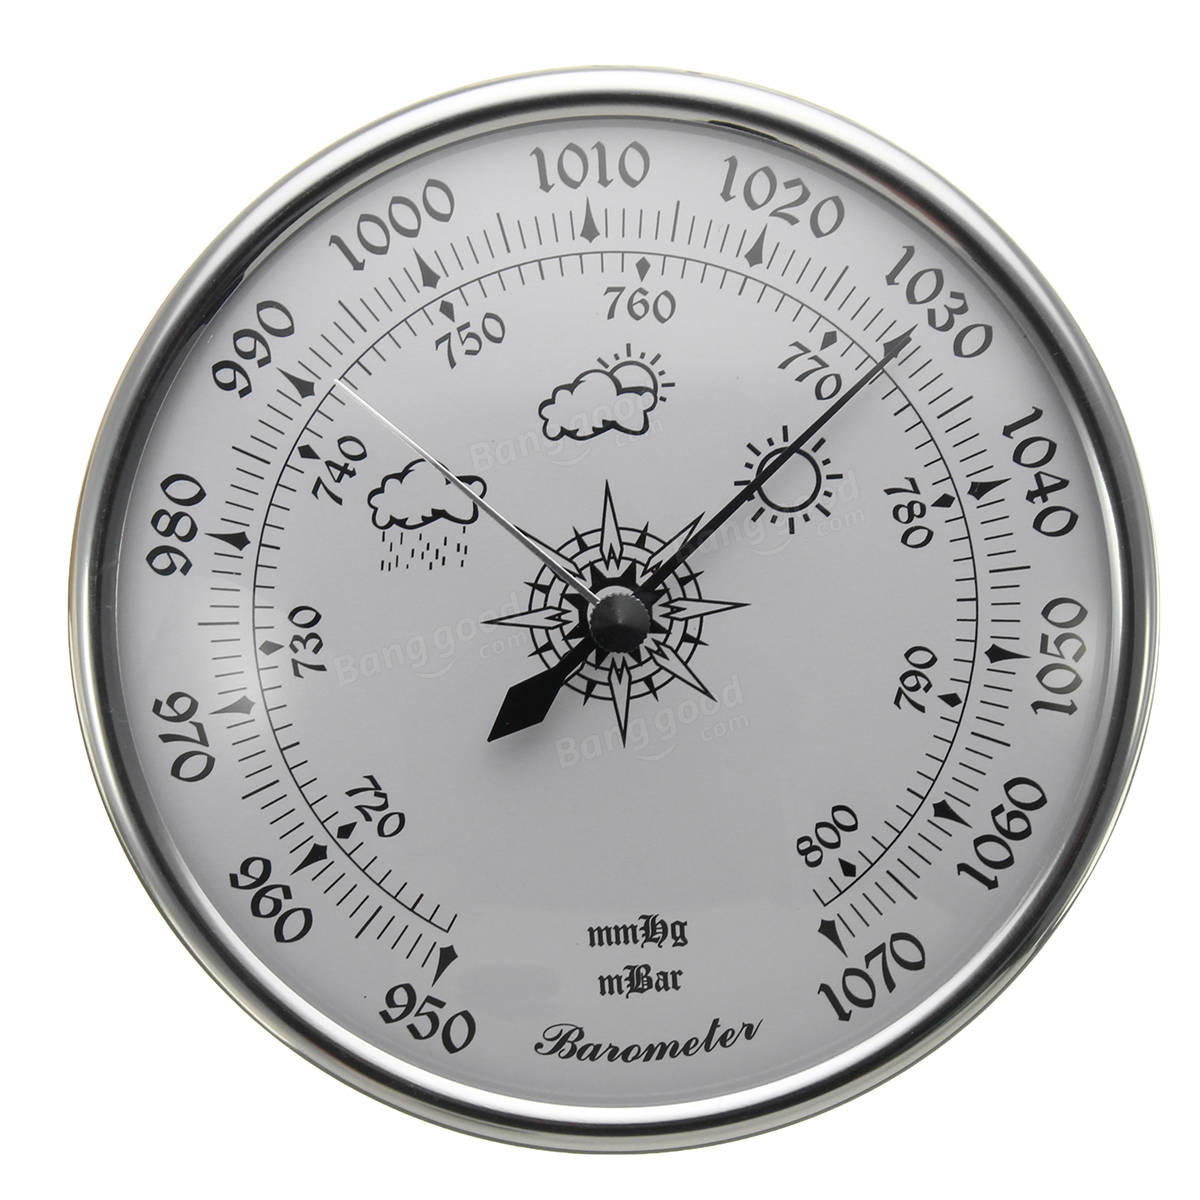 980 1040hPa مقياس الضغط الجوي ويثرغلاس الطقس متر الجدار شنقا بيع